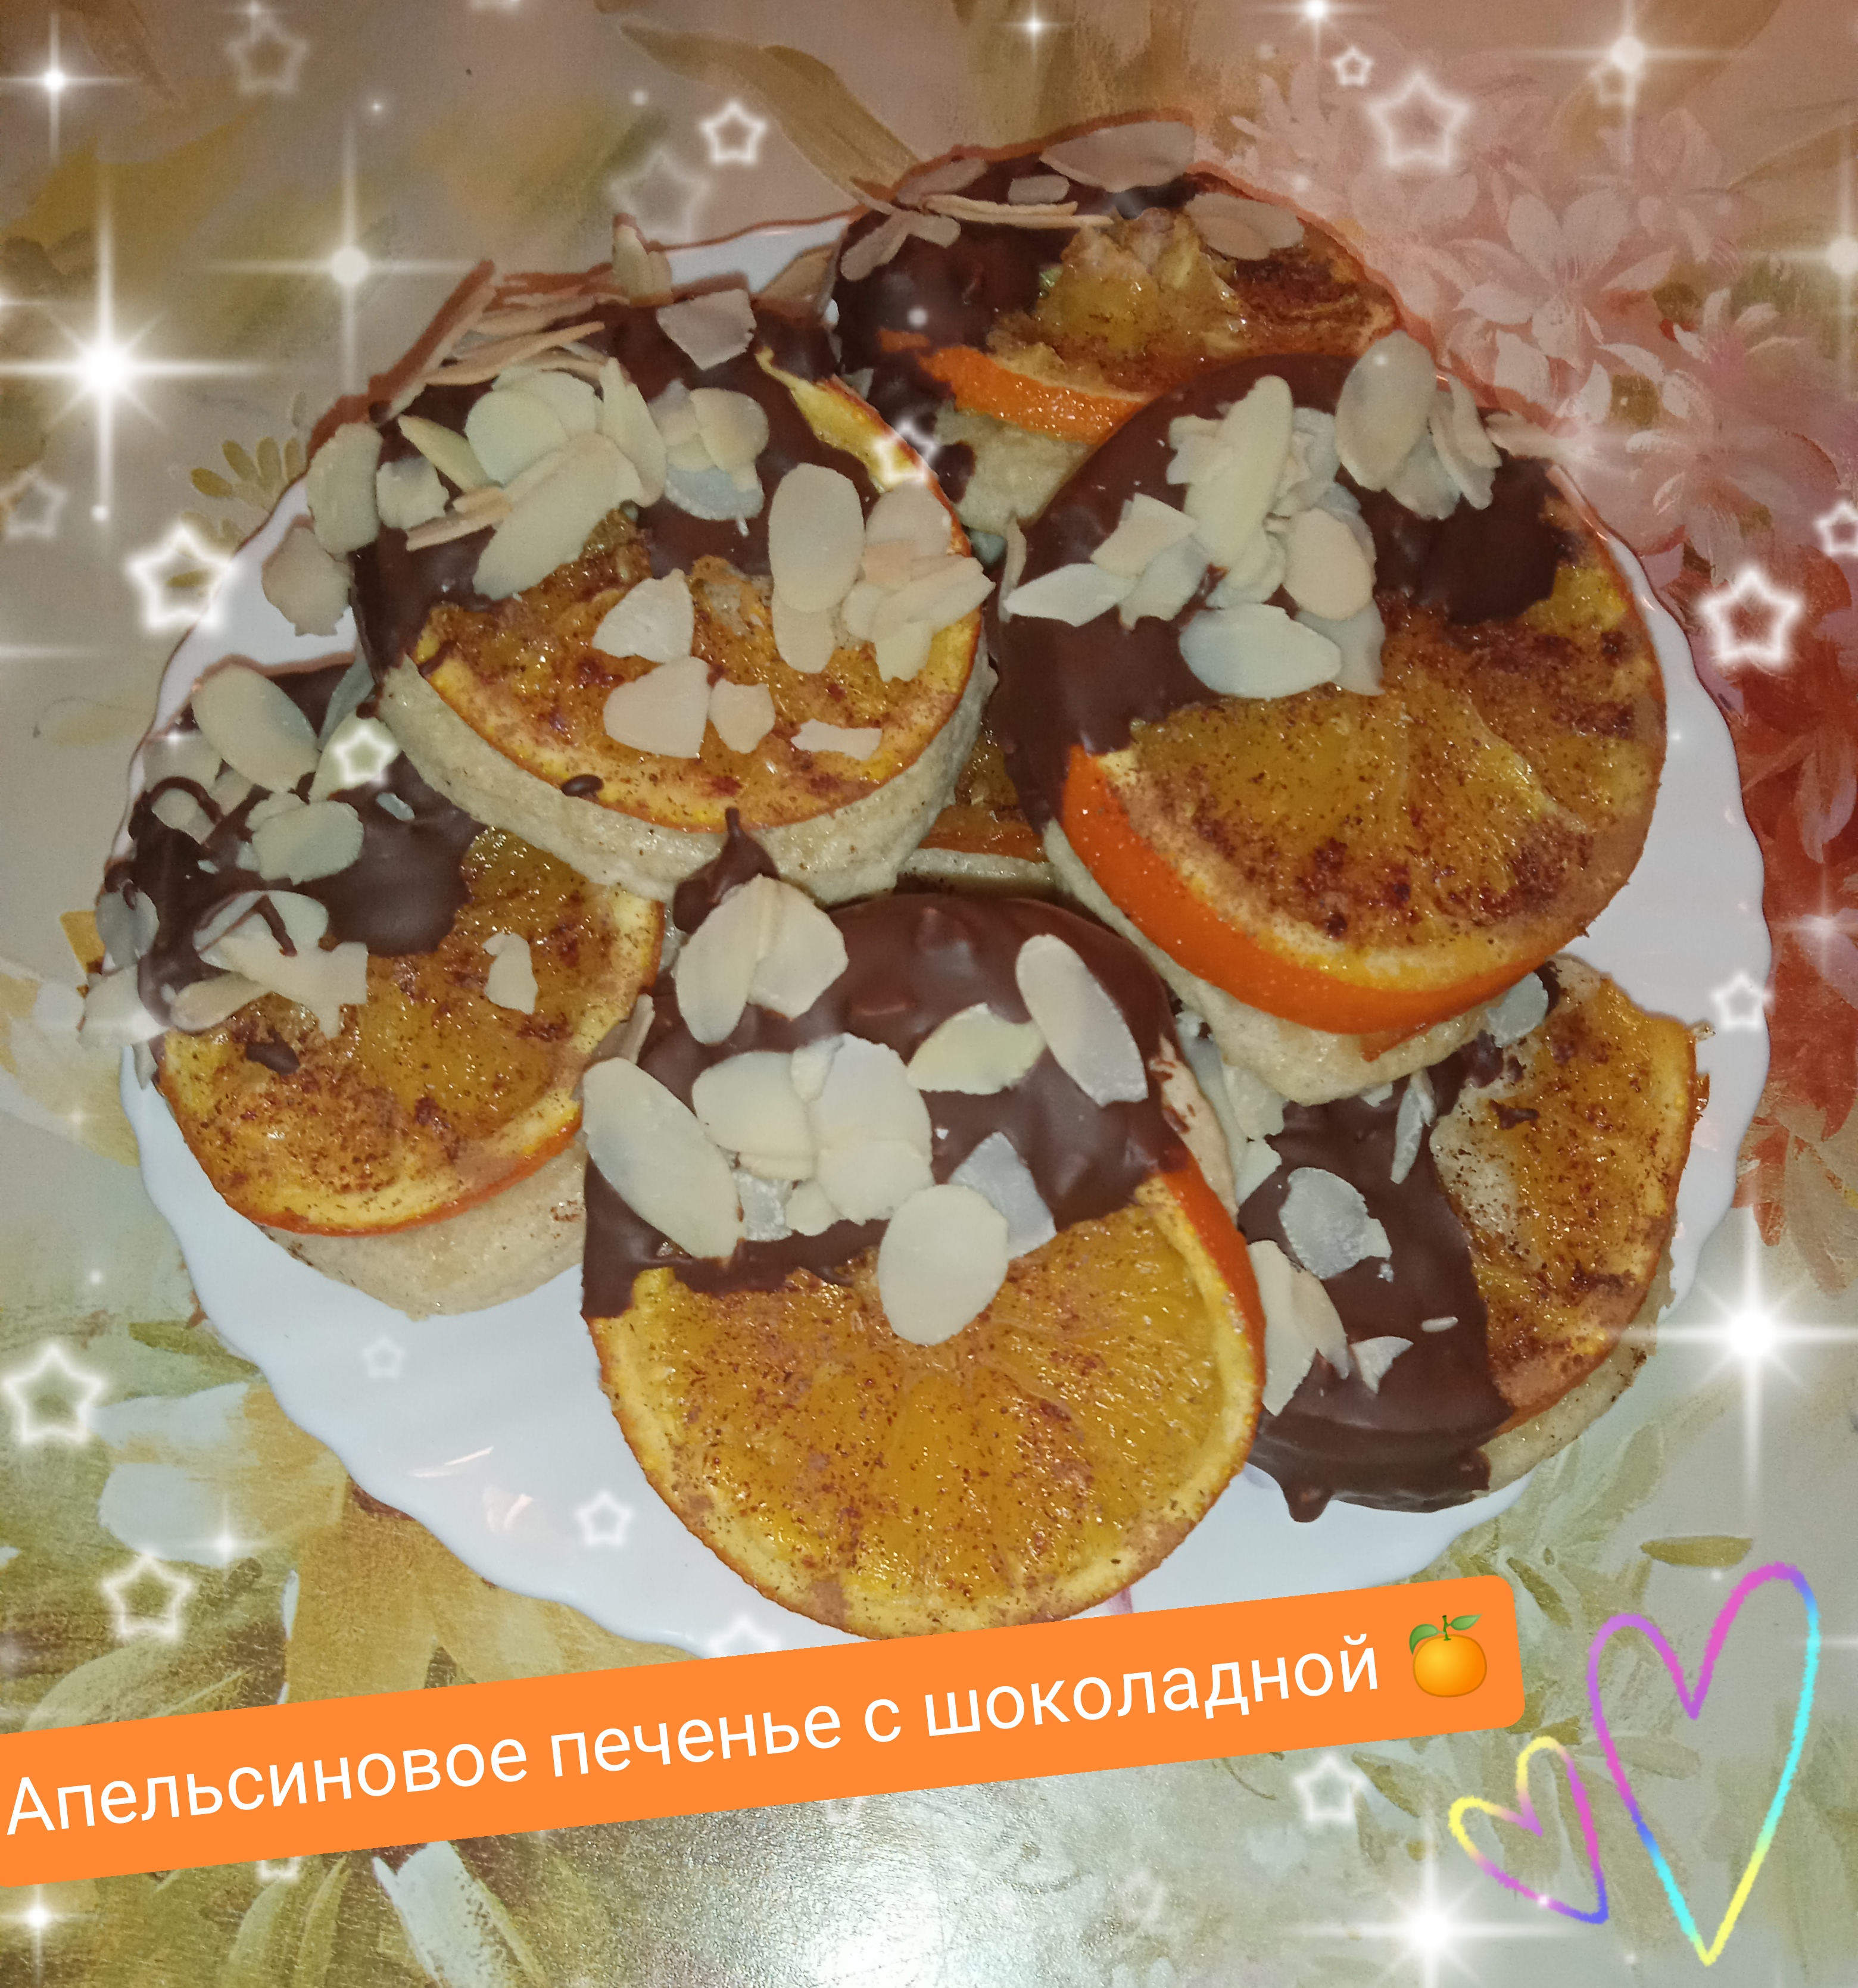 Апельсиновое печенье с шоколадом 